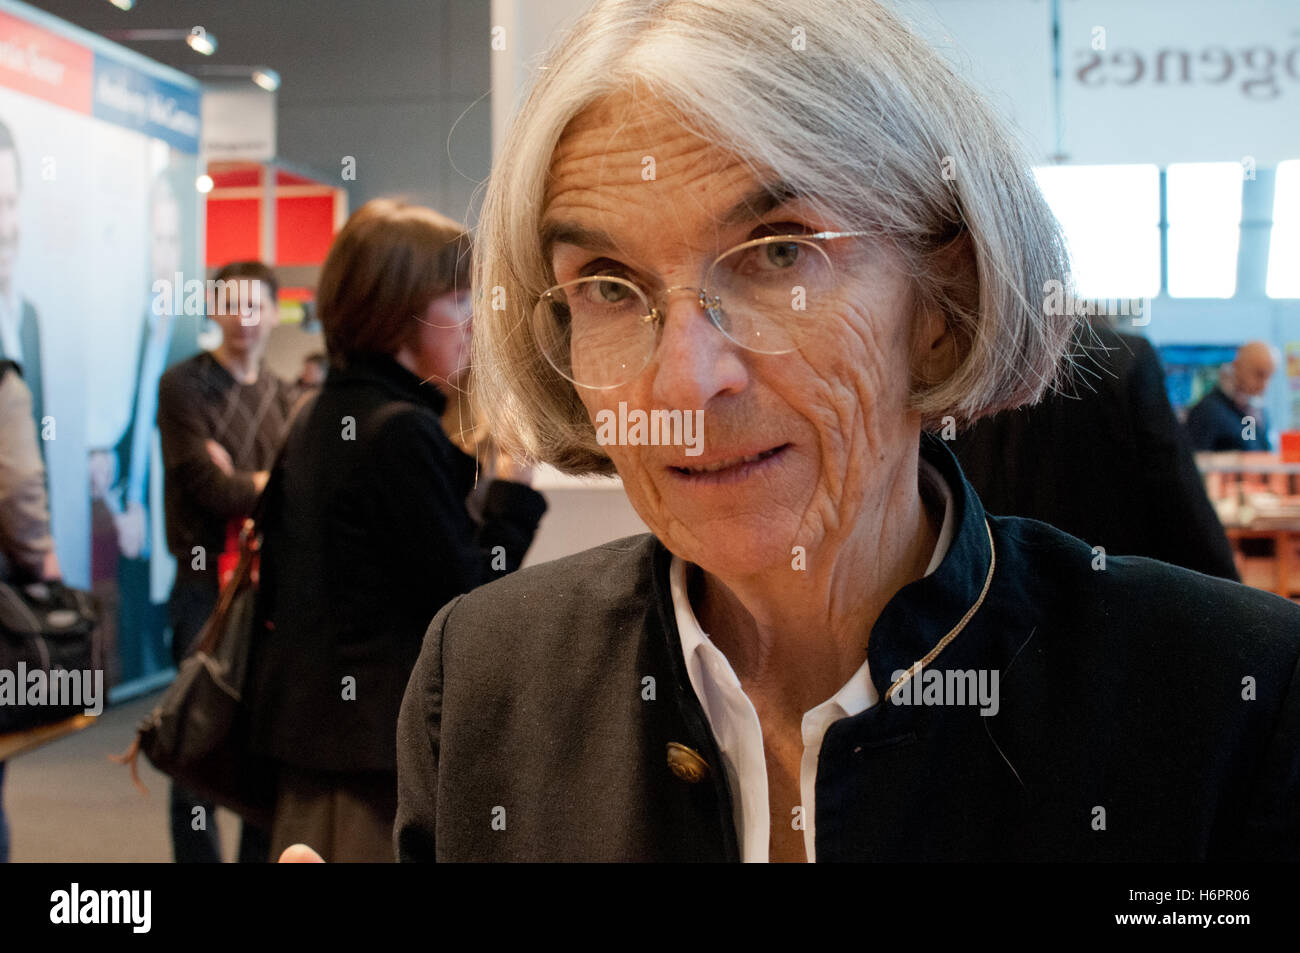 Author Donna Leon (Commissario Brunetti) at the Frankfurt Bookfair 2012 Stock Photo